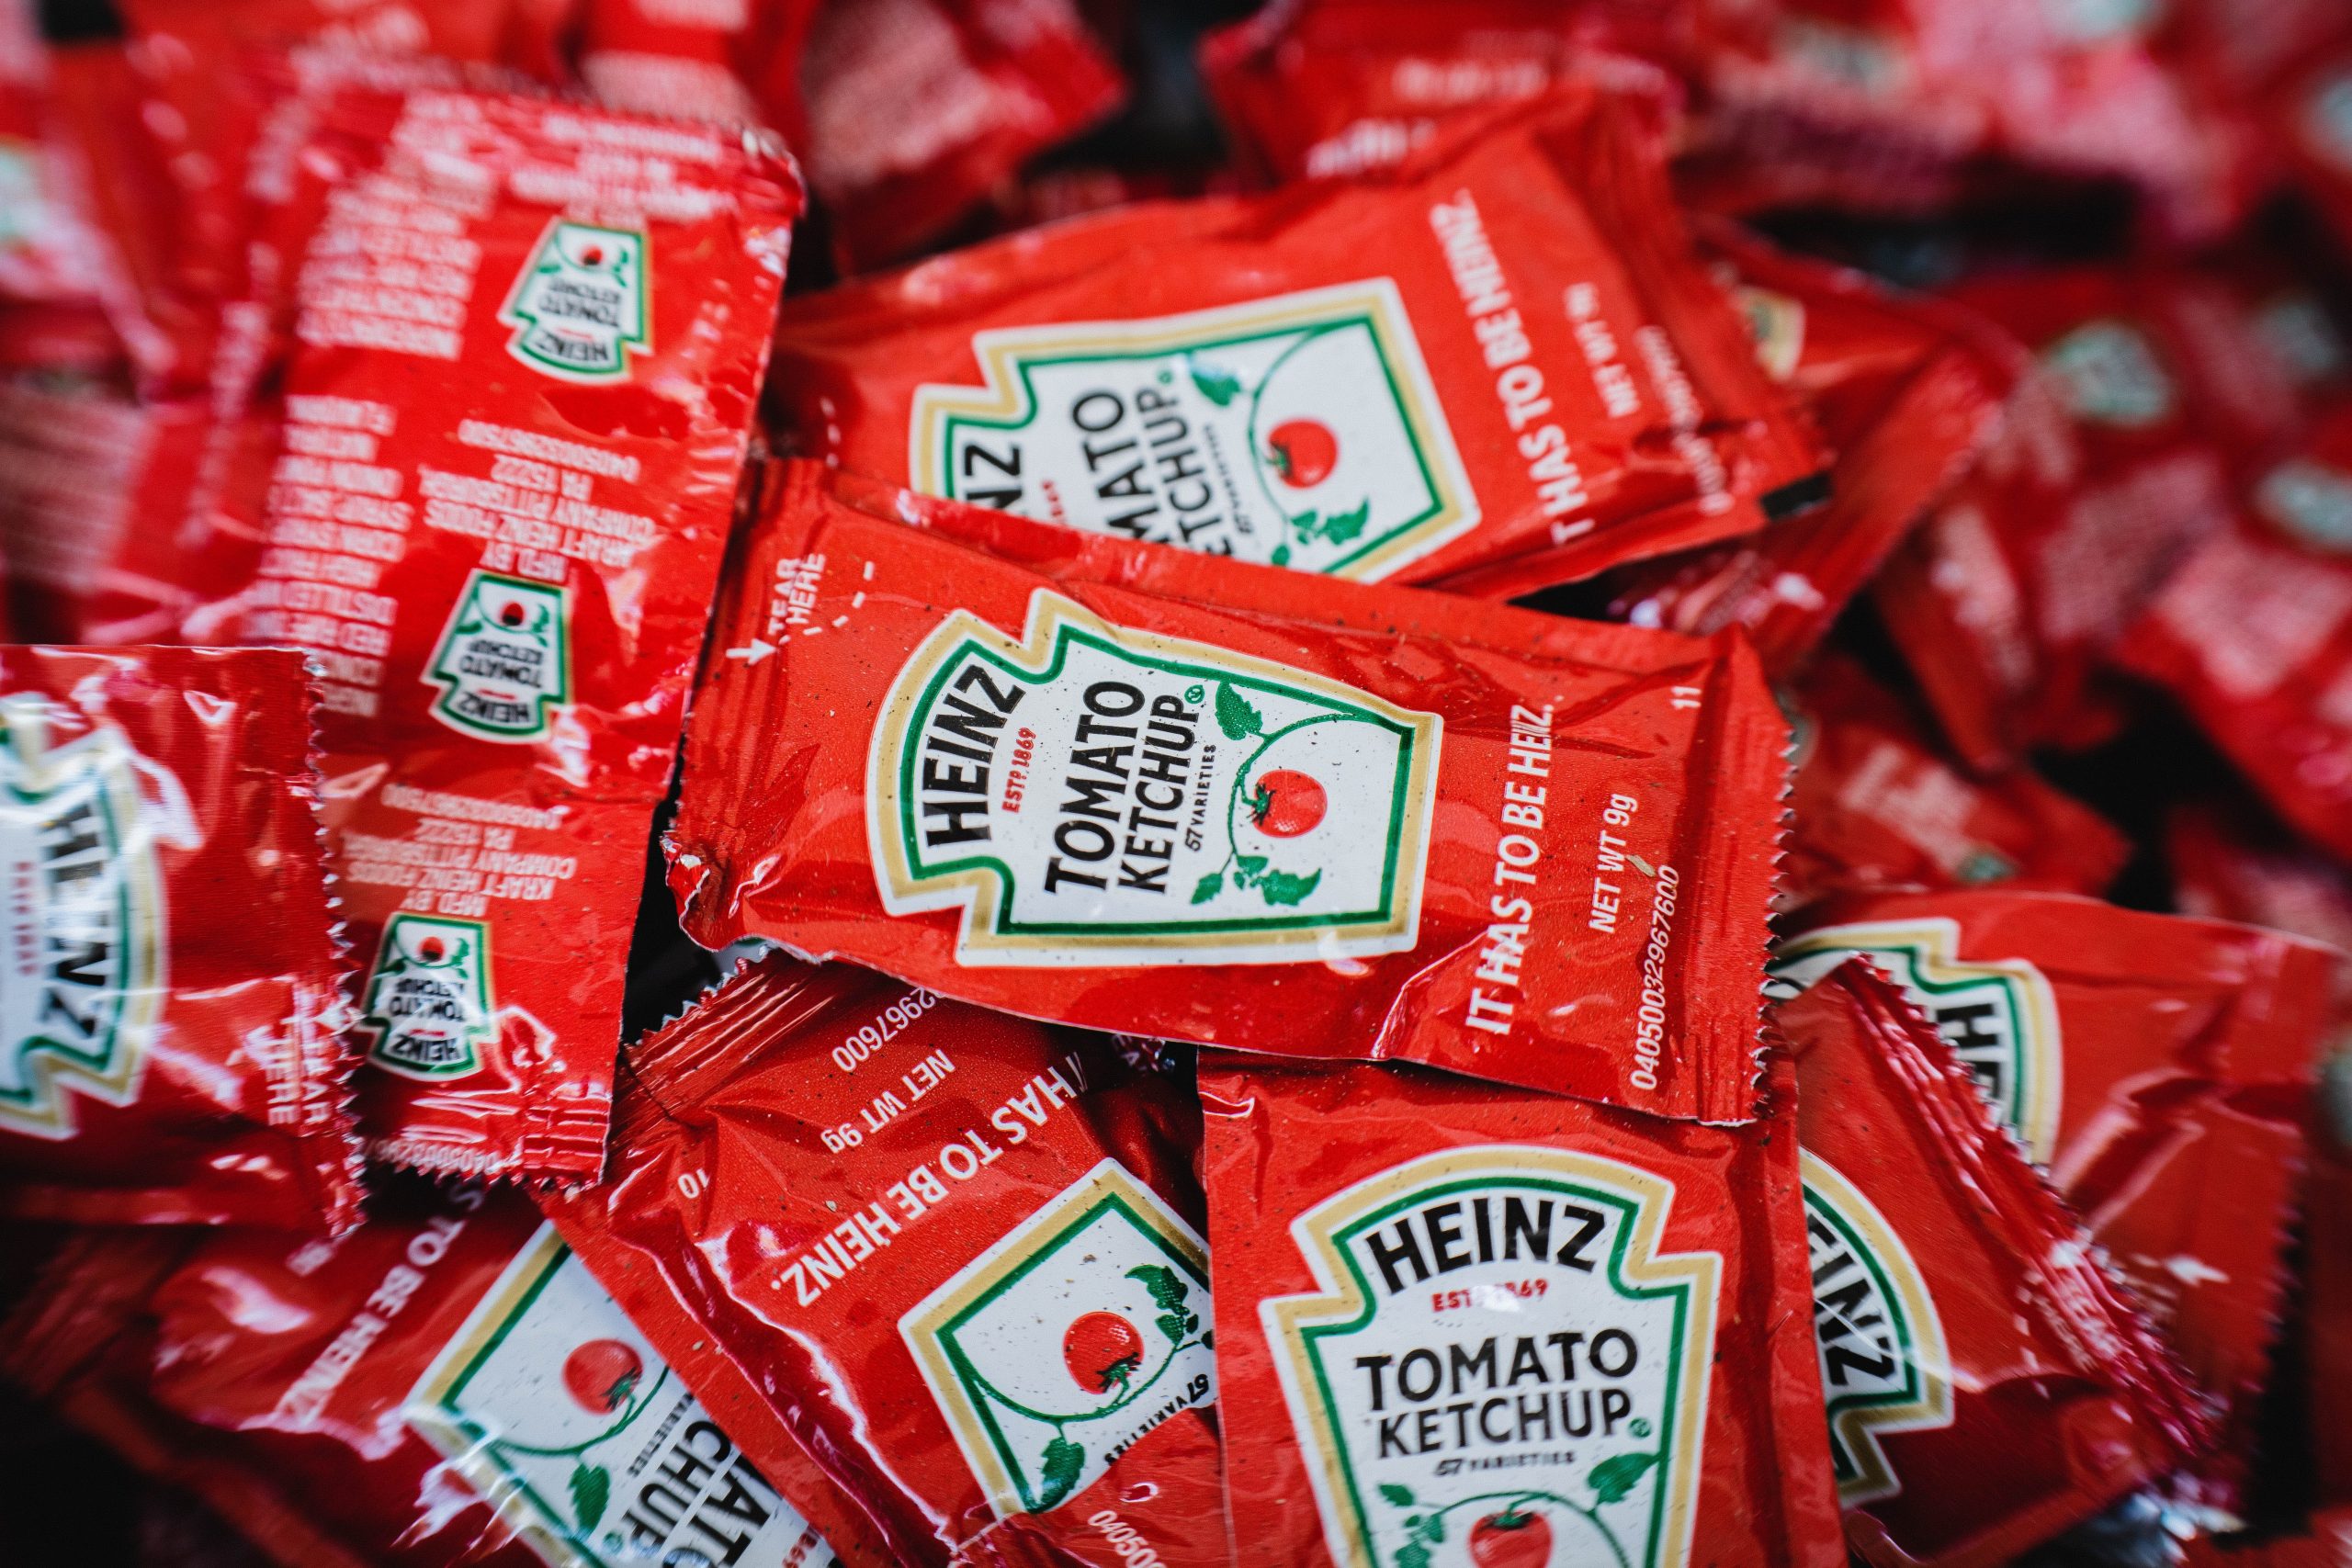 Kraft Heinz ketchup packets